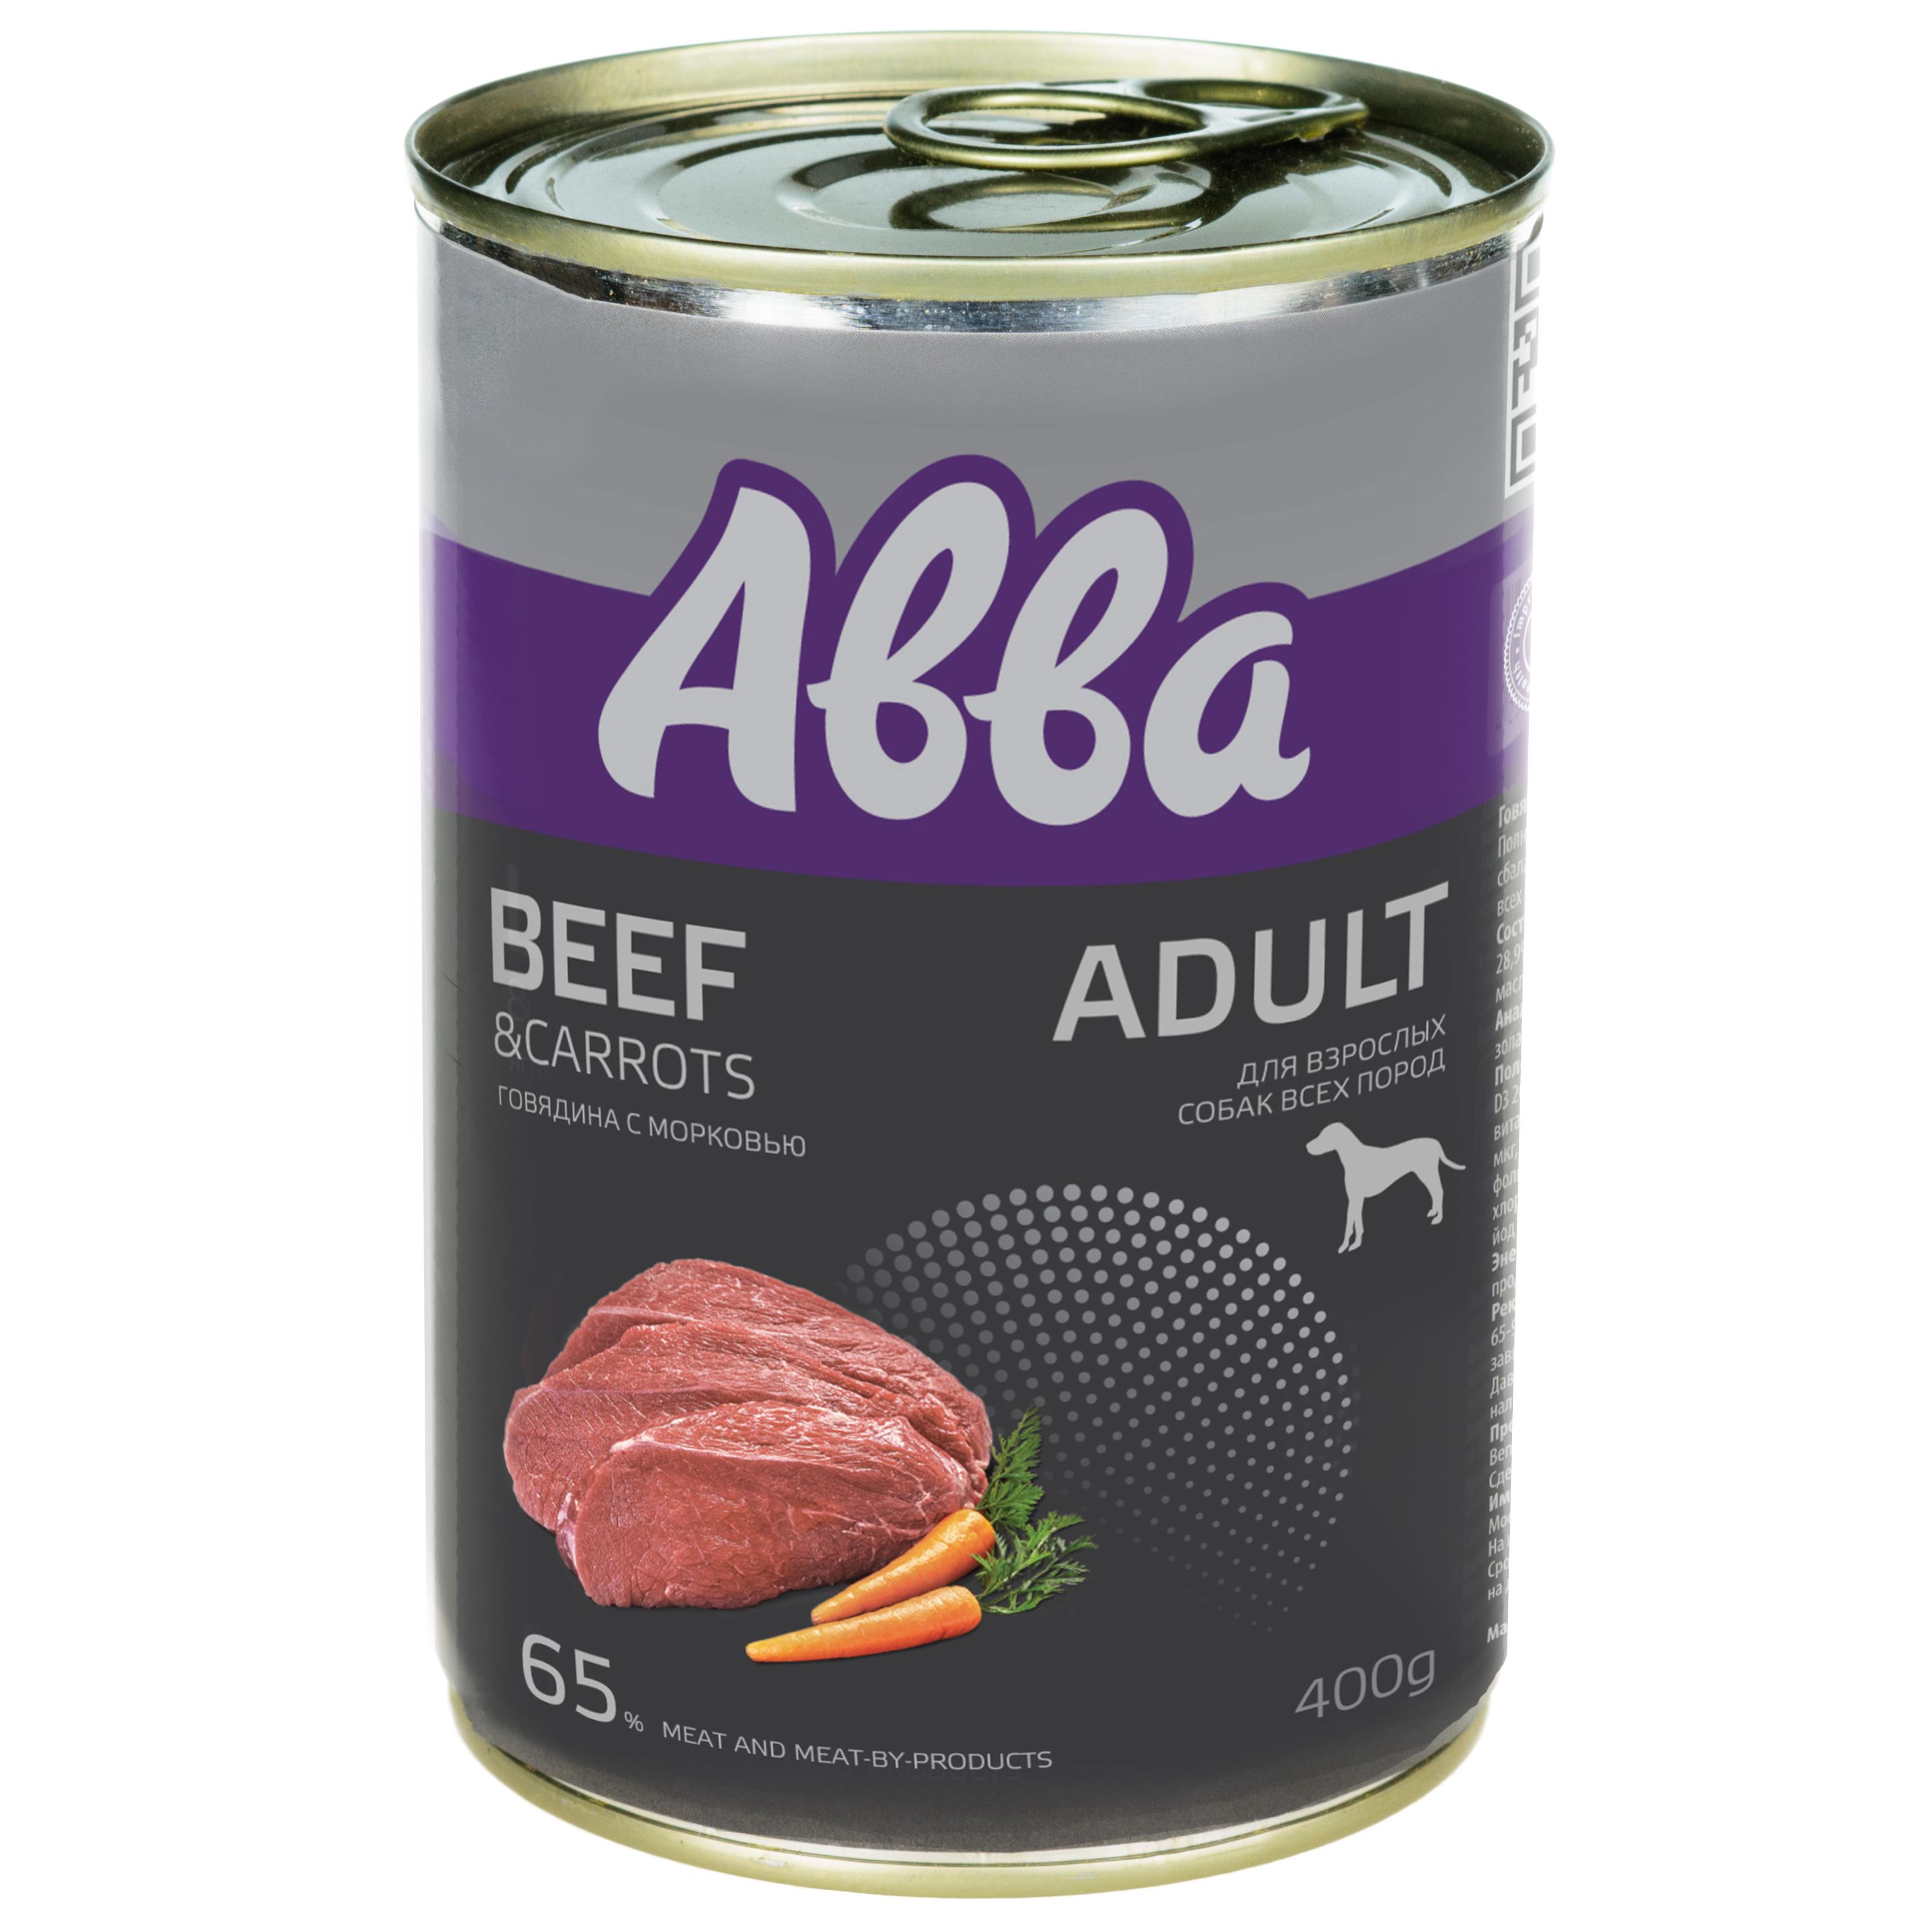 Aвва Premium Adult консервы для собак средних и крупных пород, с говядиной и морковью, 400гр